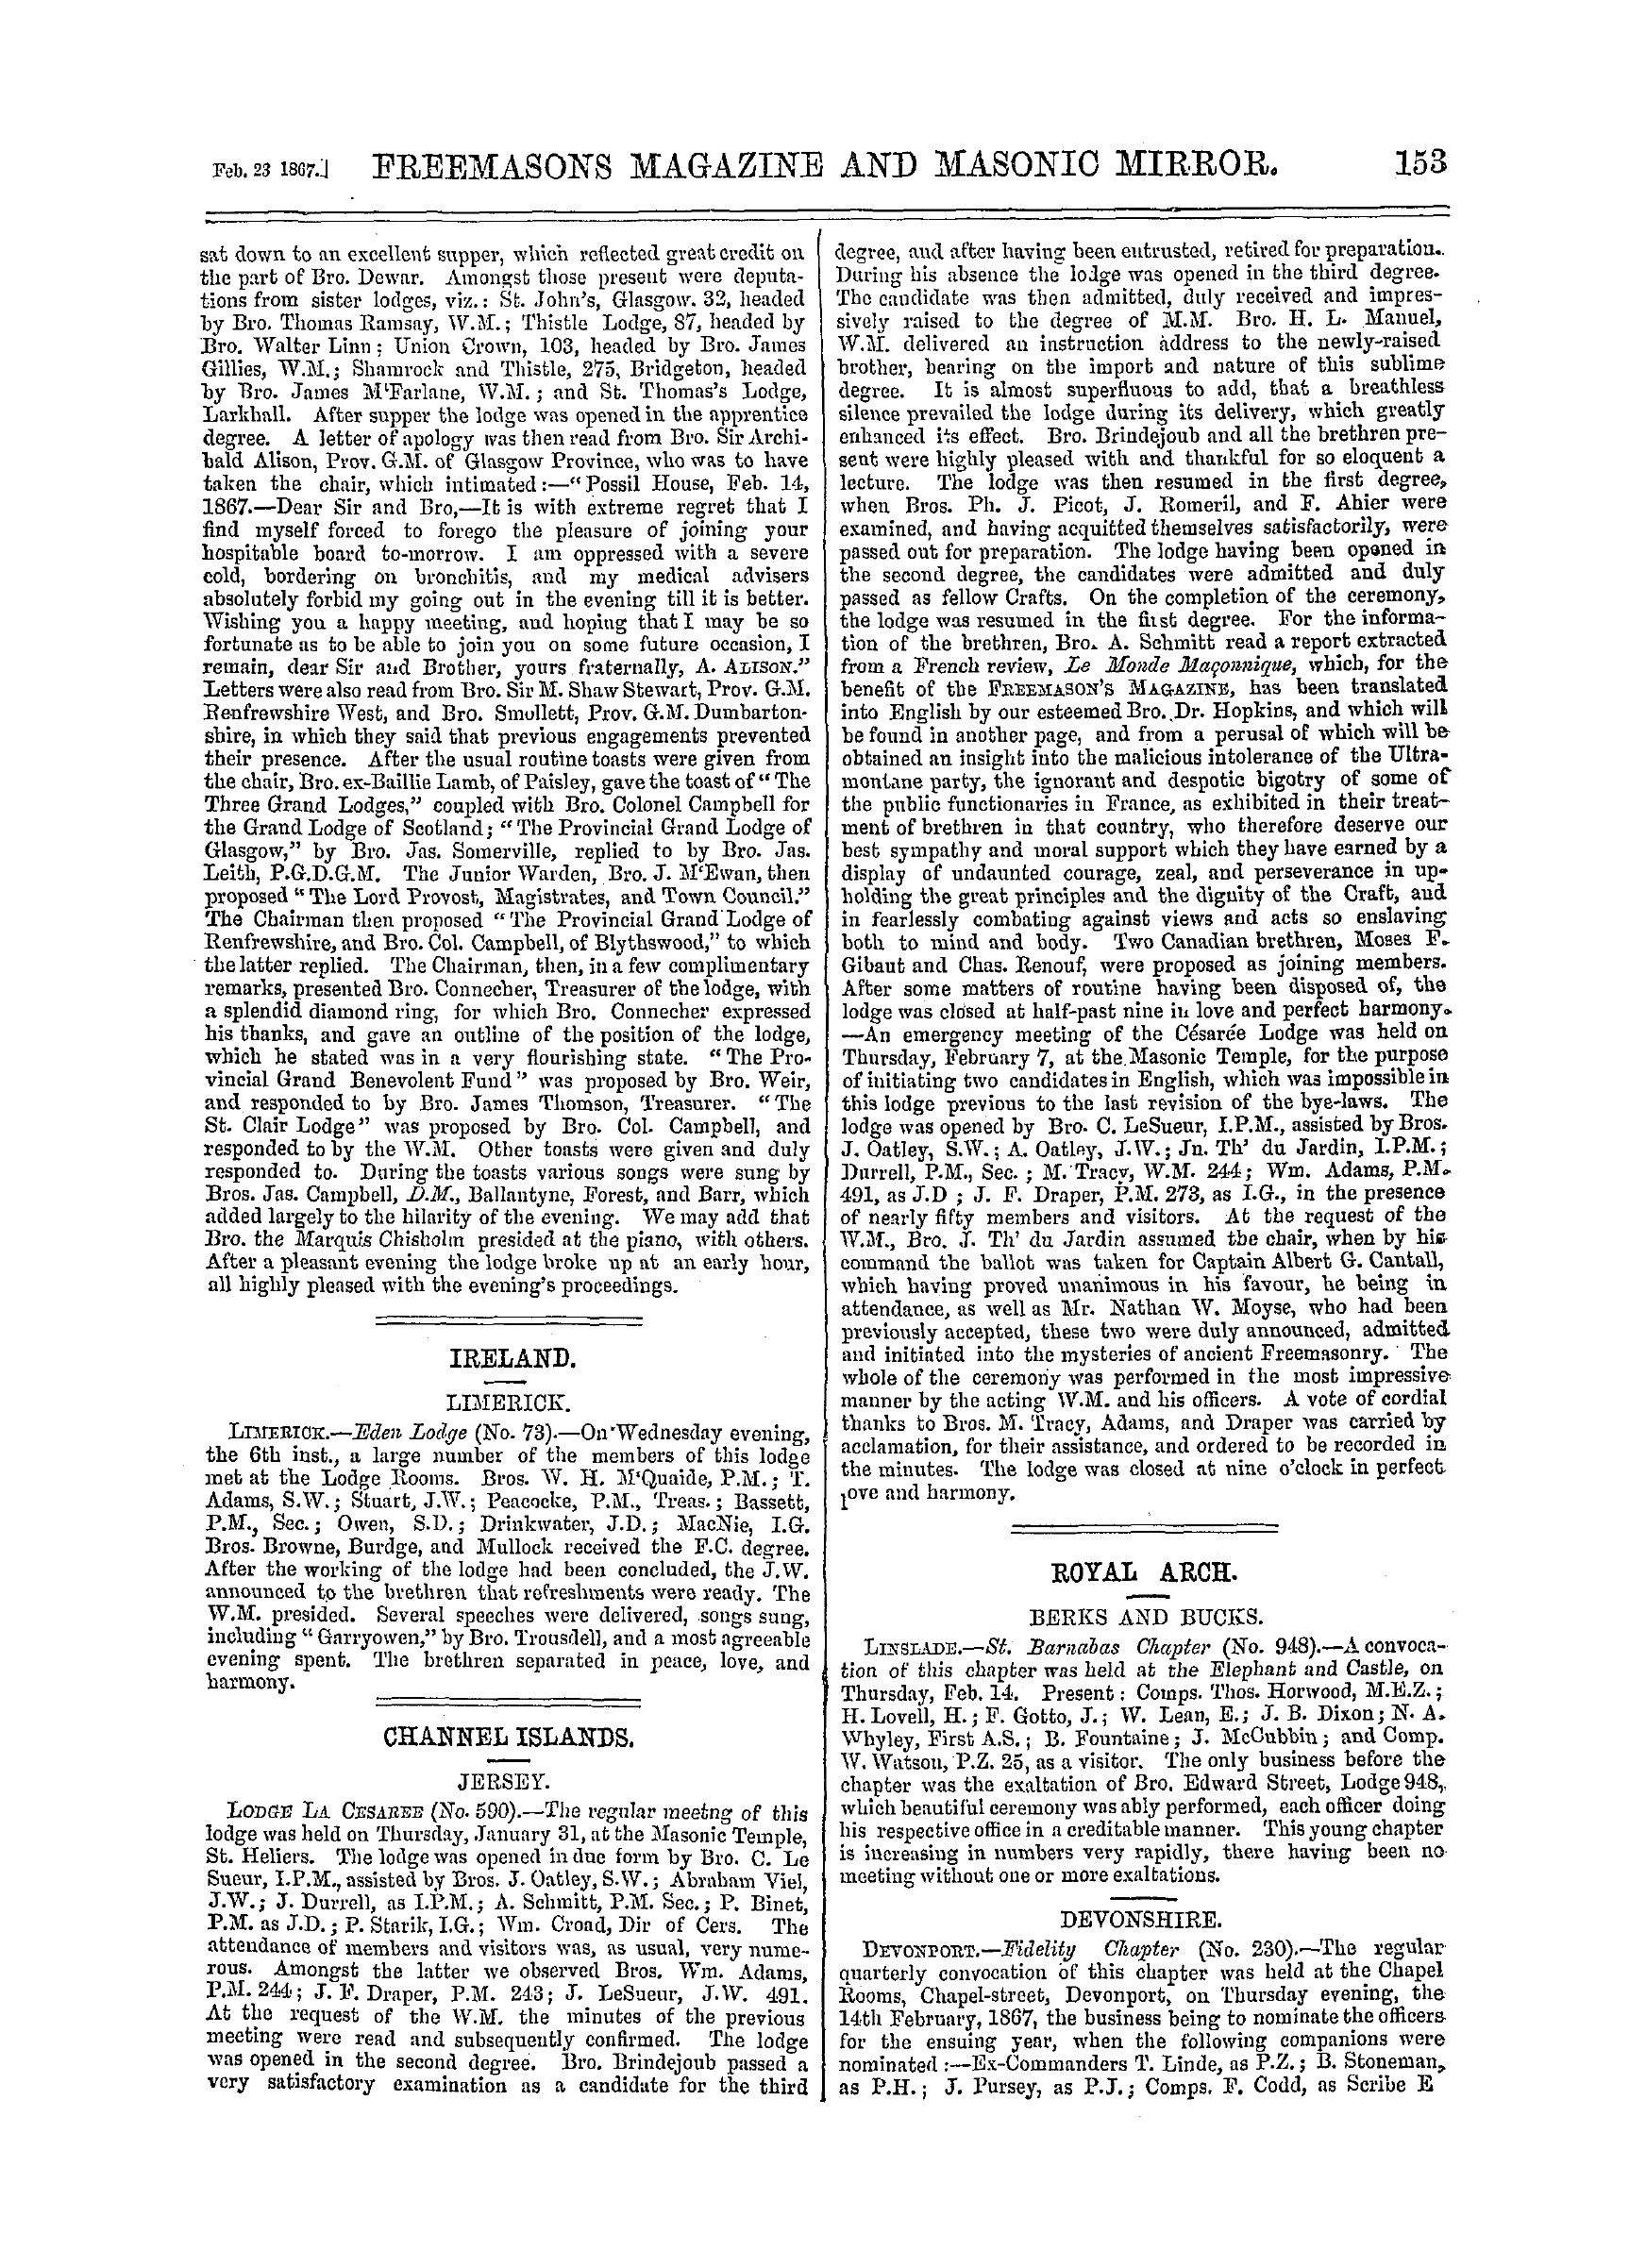 The Freemasons' Monthly Magazine: 1867-02-23 - Ireland.